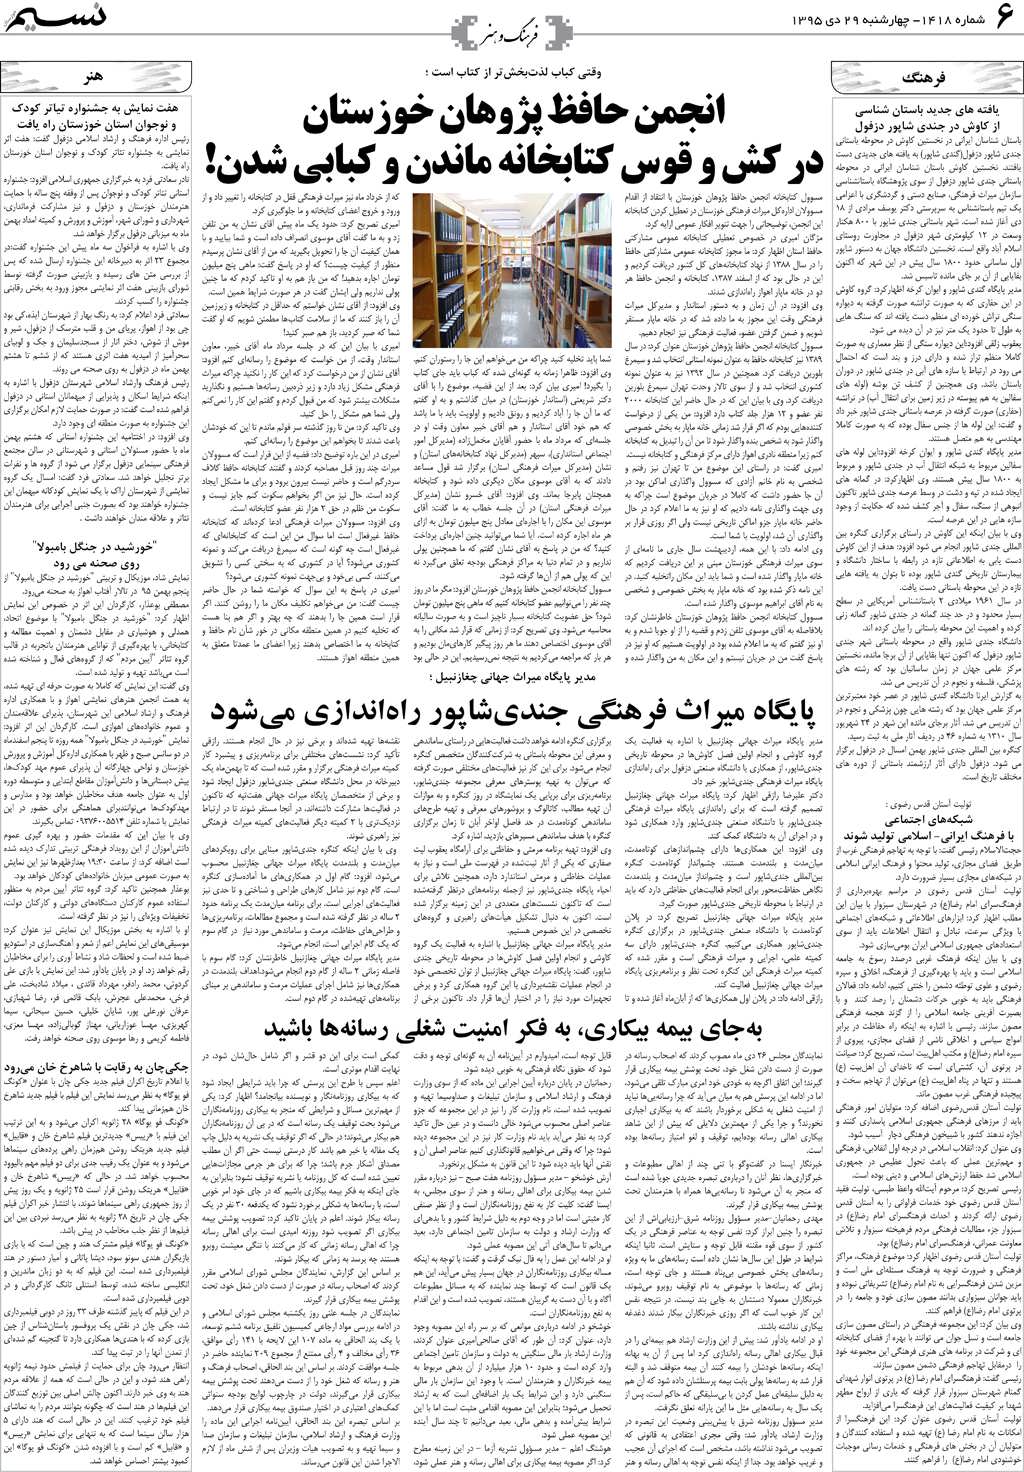 صفحه فرهنگ و هنر روزنامه نسیم شماره 1418